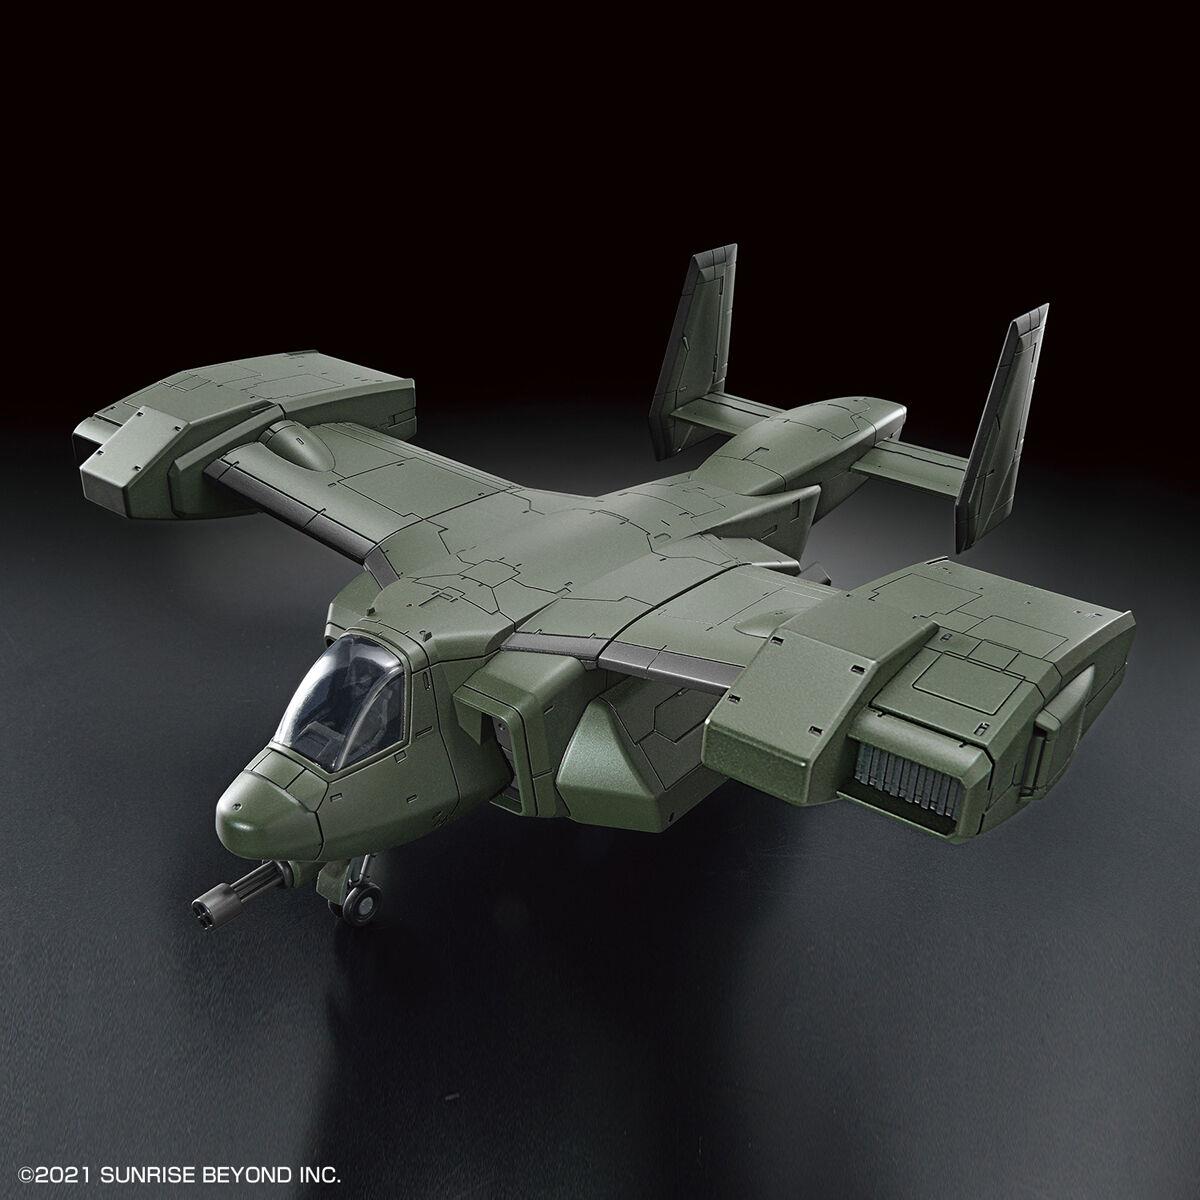 Kyoukai Senki: V-33 Stork Carrier HG Model